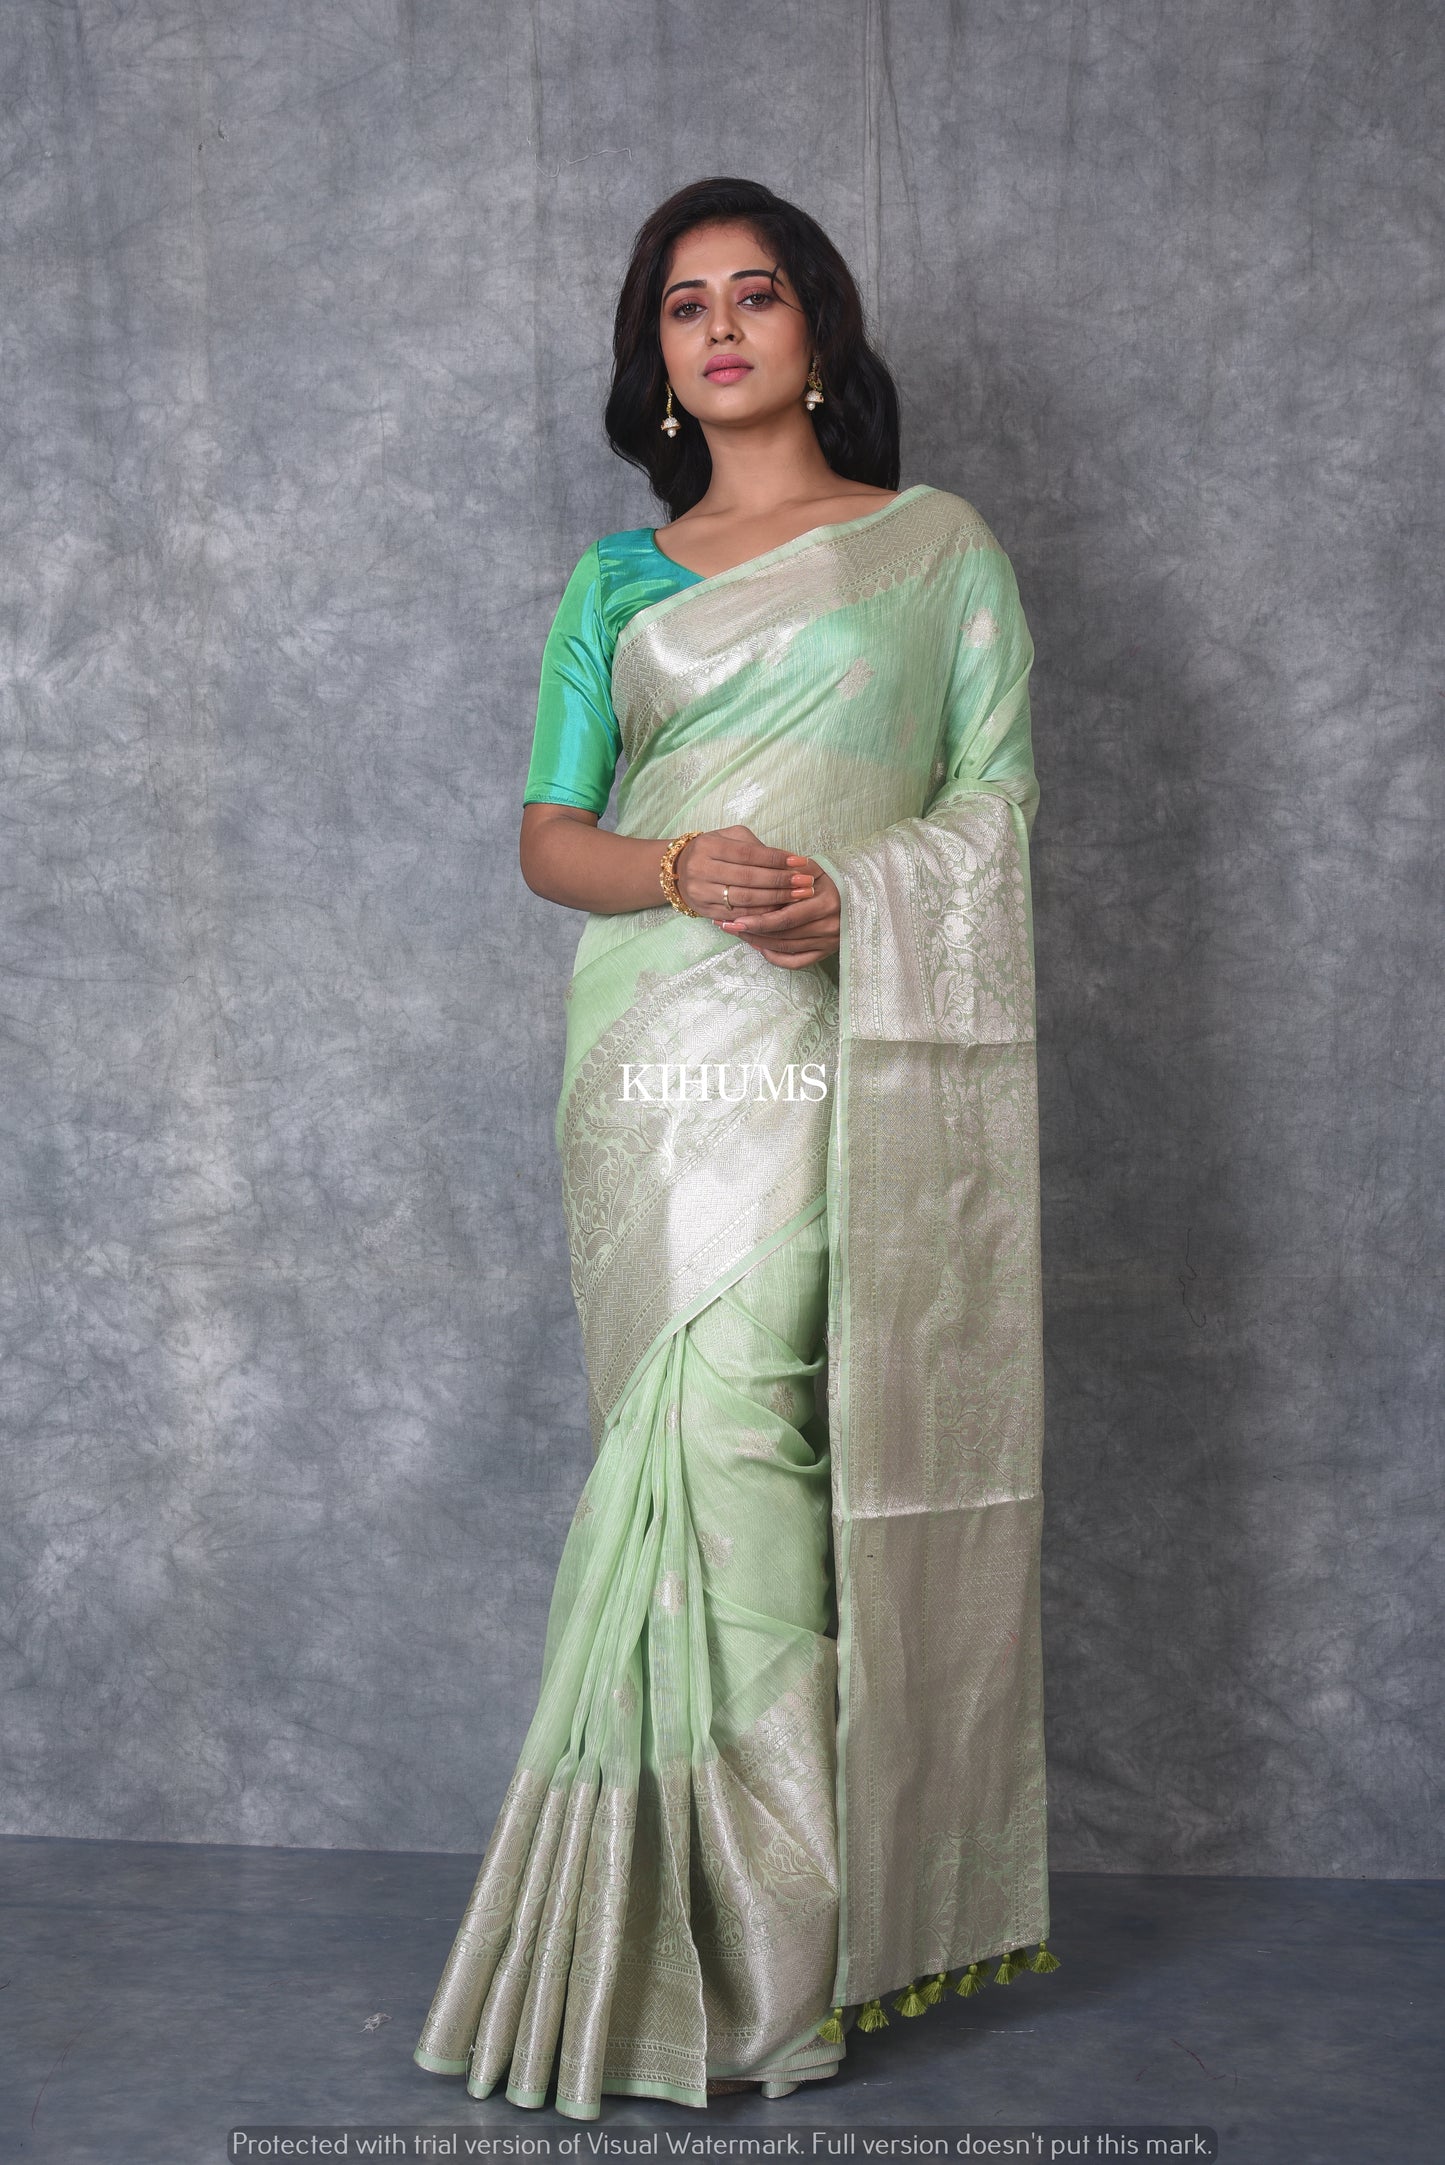 Light Green Banarasi Silk Linen Saree | Silver Zari Border | Grey Body | KIHUMS Saree